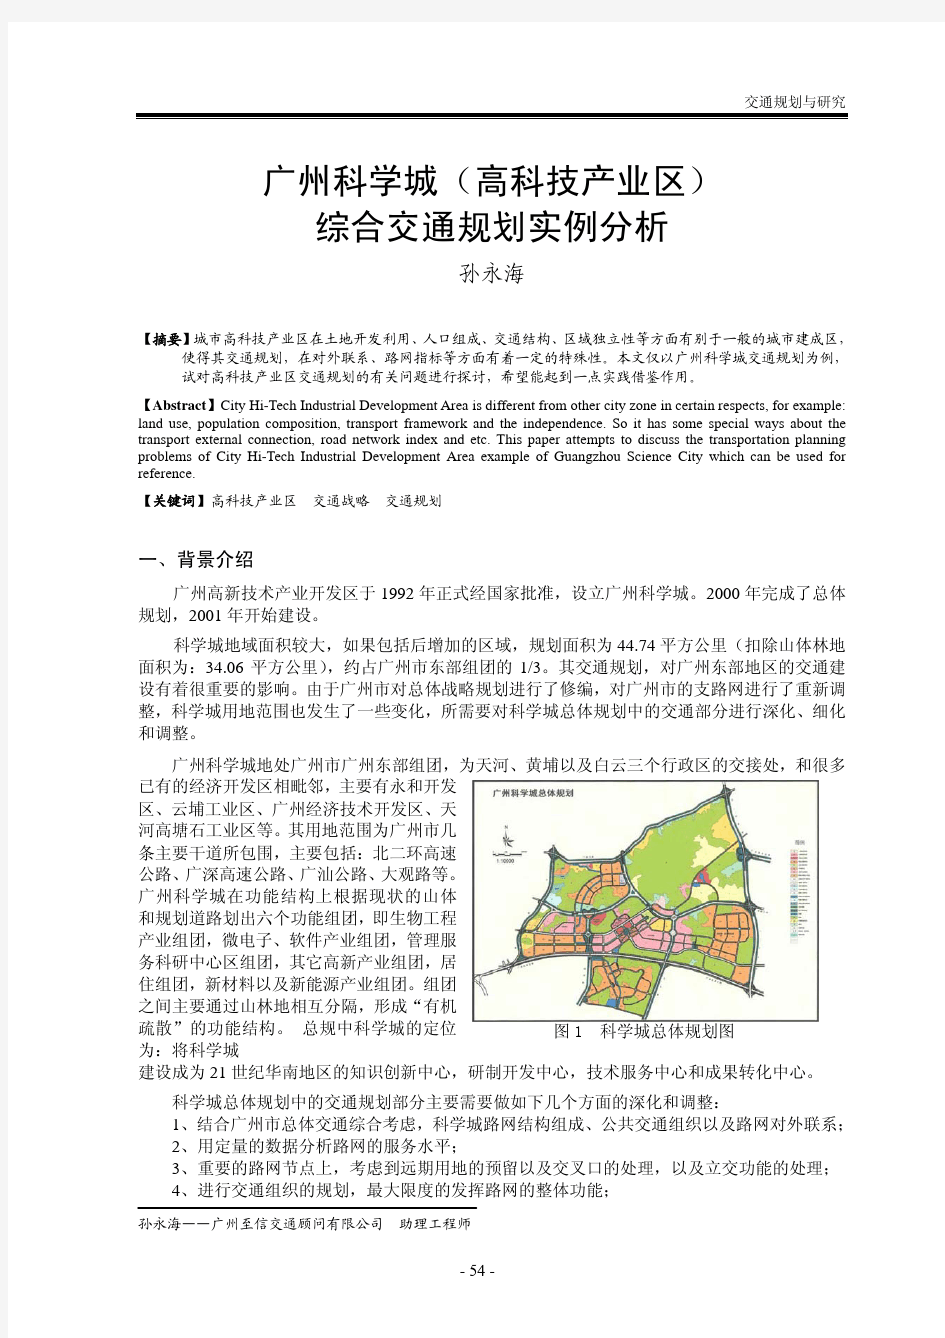 广州科学城(高科技产业区) 综合交通规划实例分析